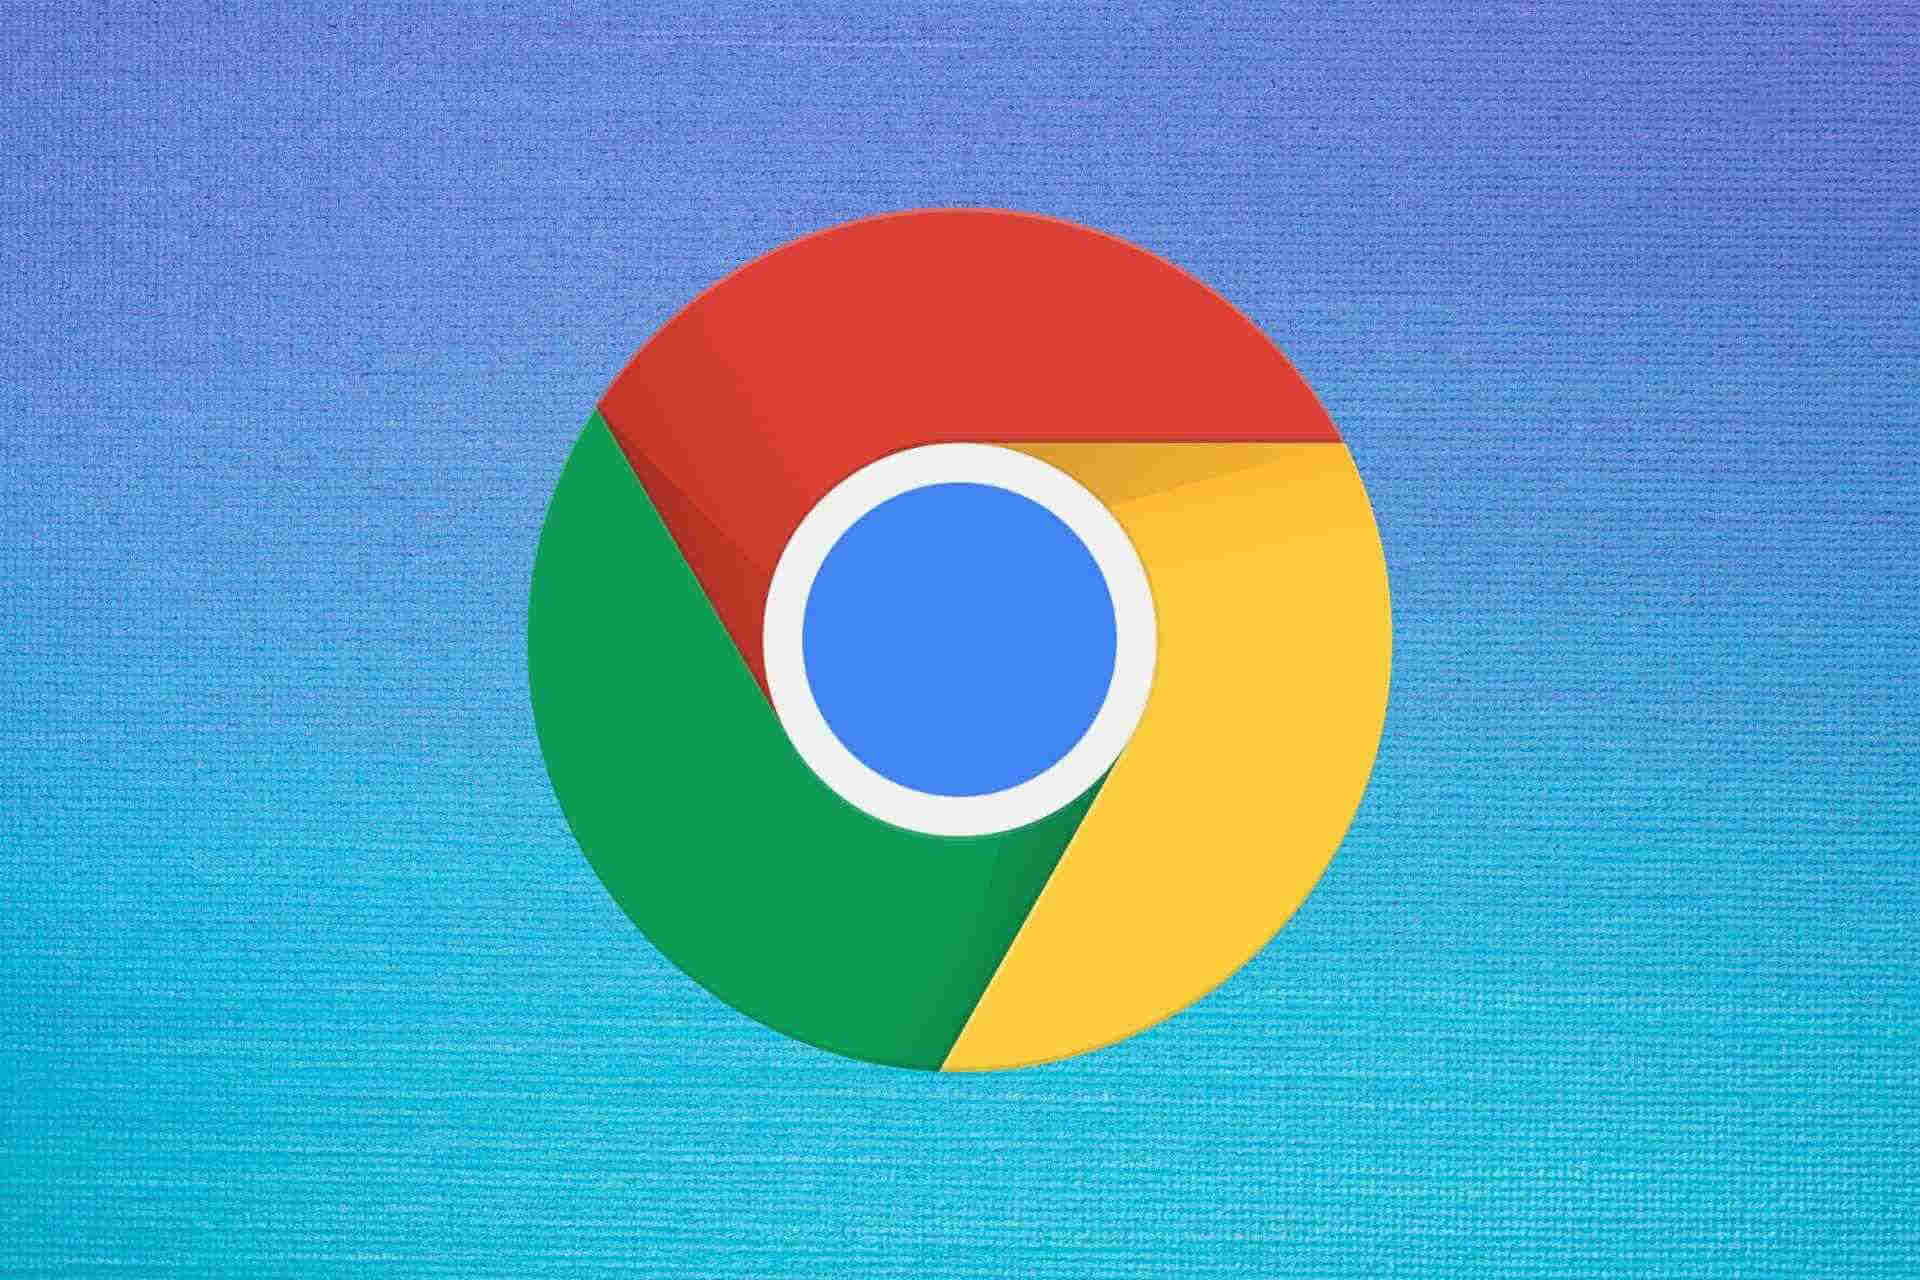 download google browser